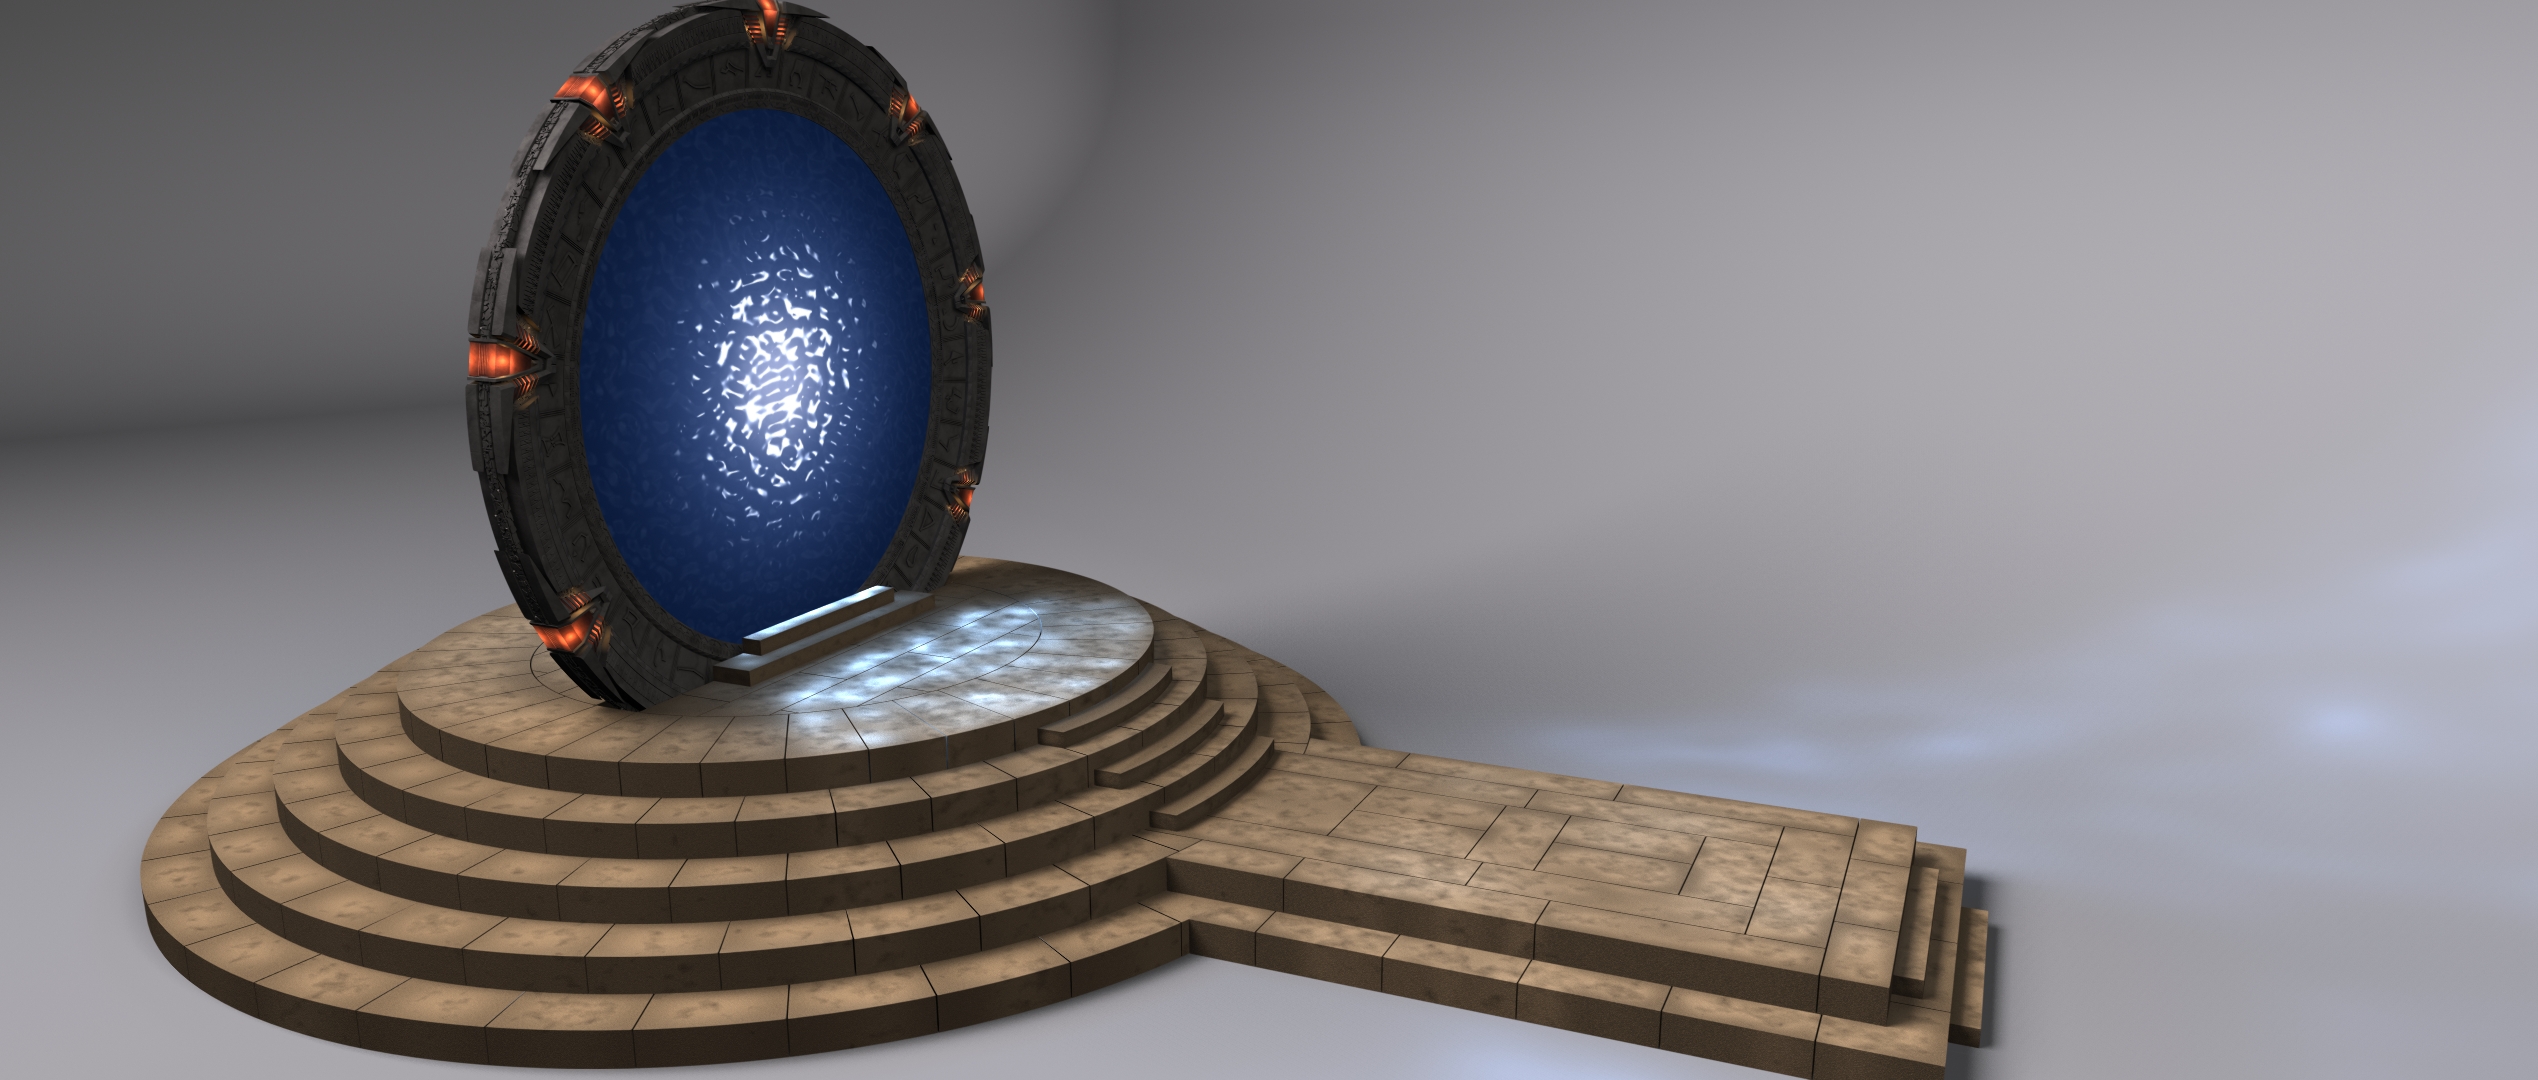 Stargate 2 Model Showcase.